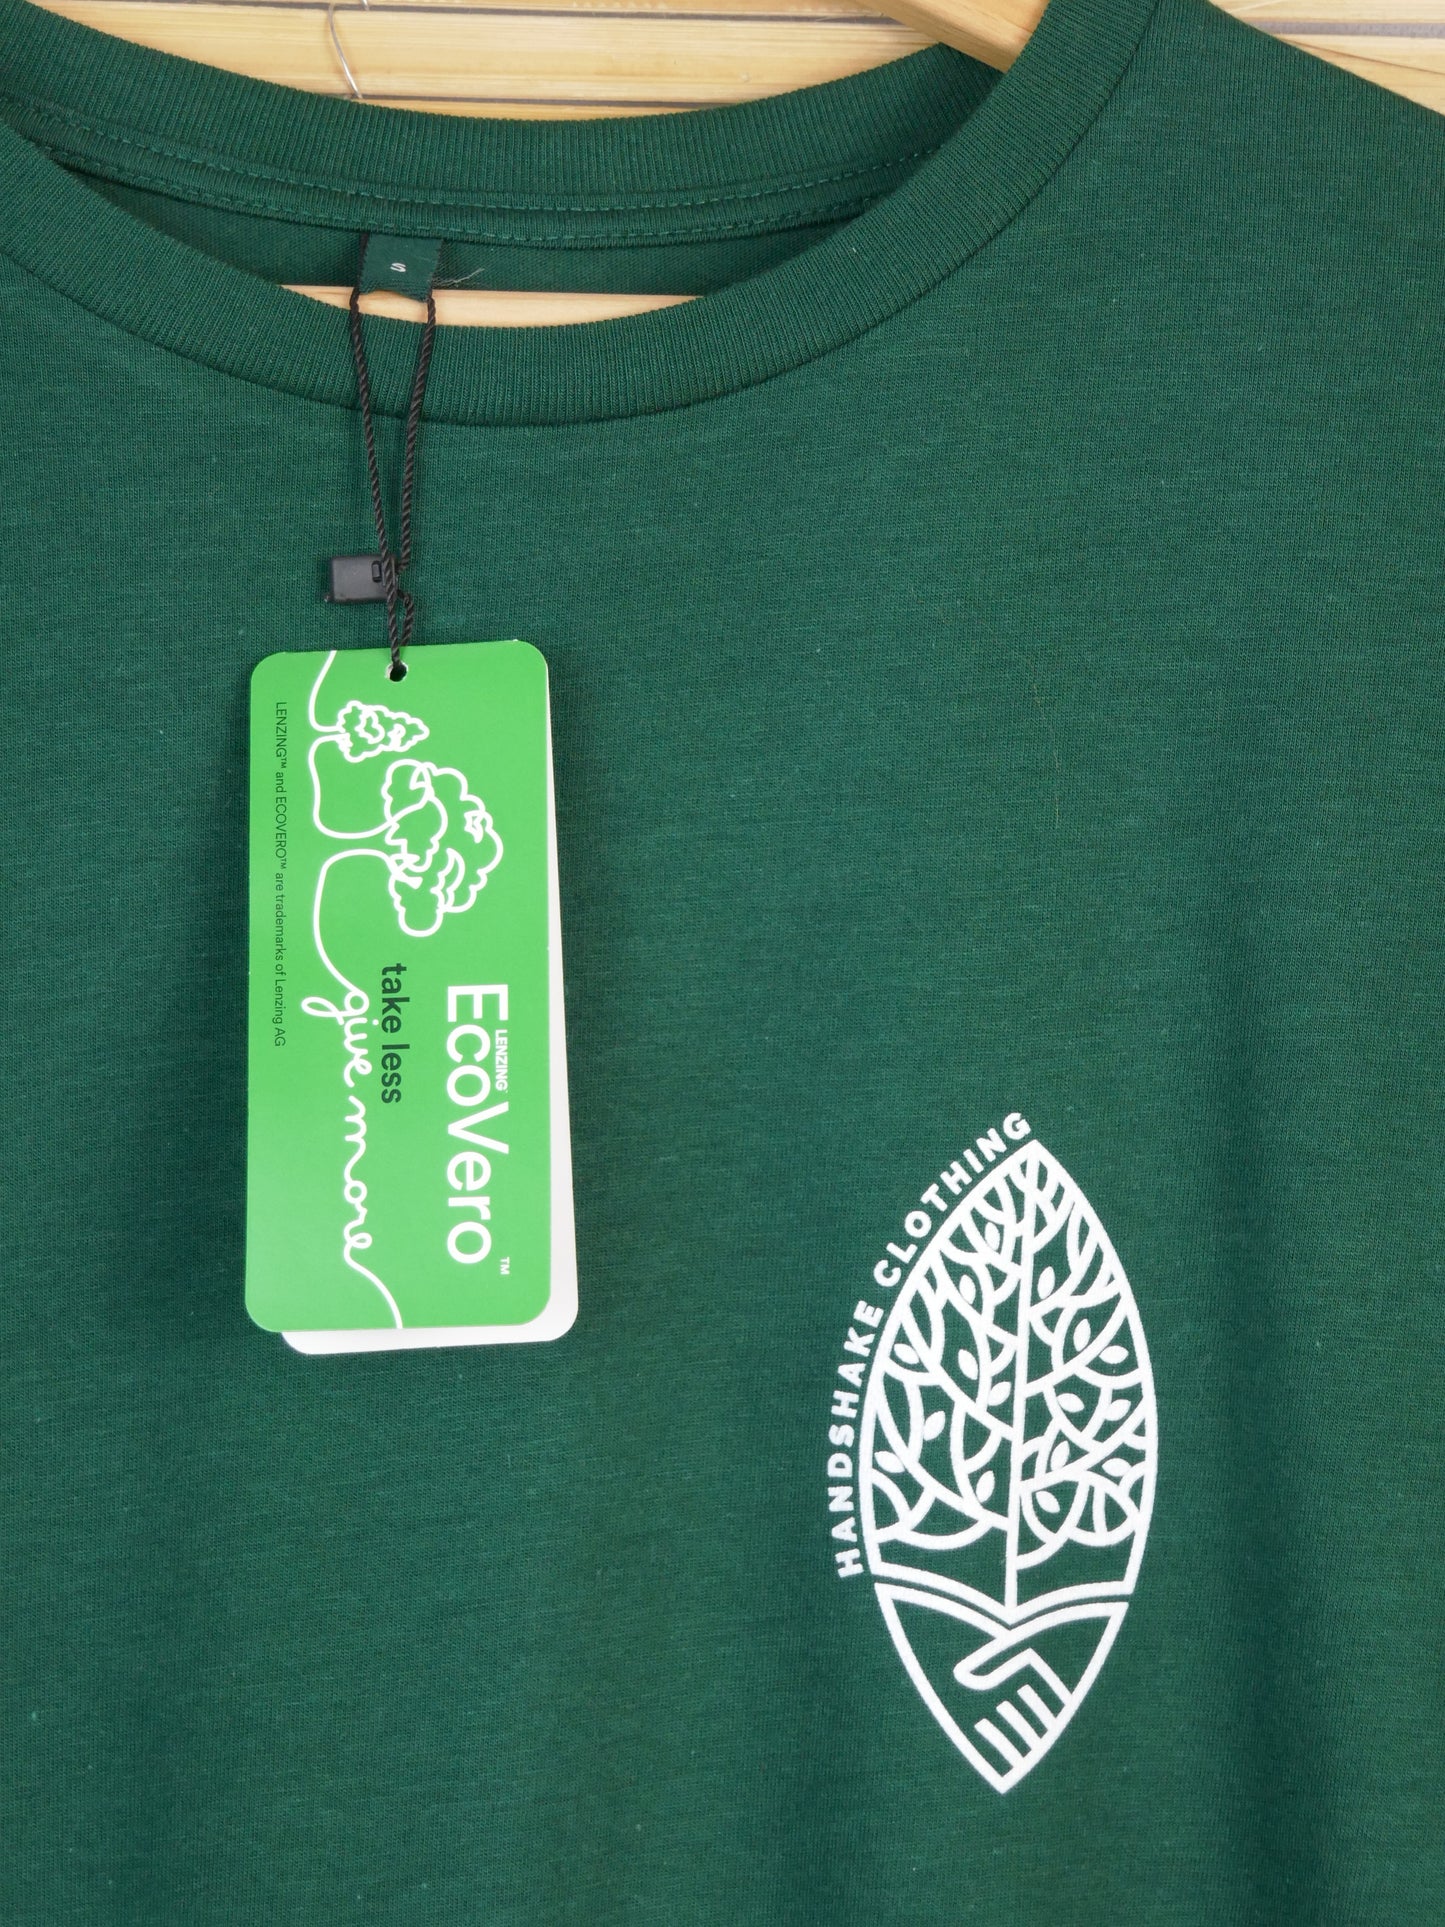 MIRO aus Holzfaser (EcoVero) mit kleinem Logo, bottle green